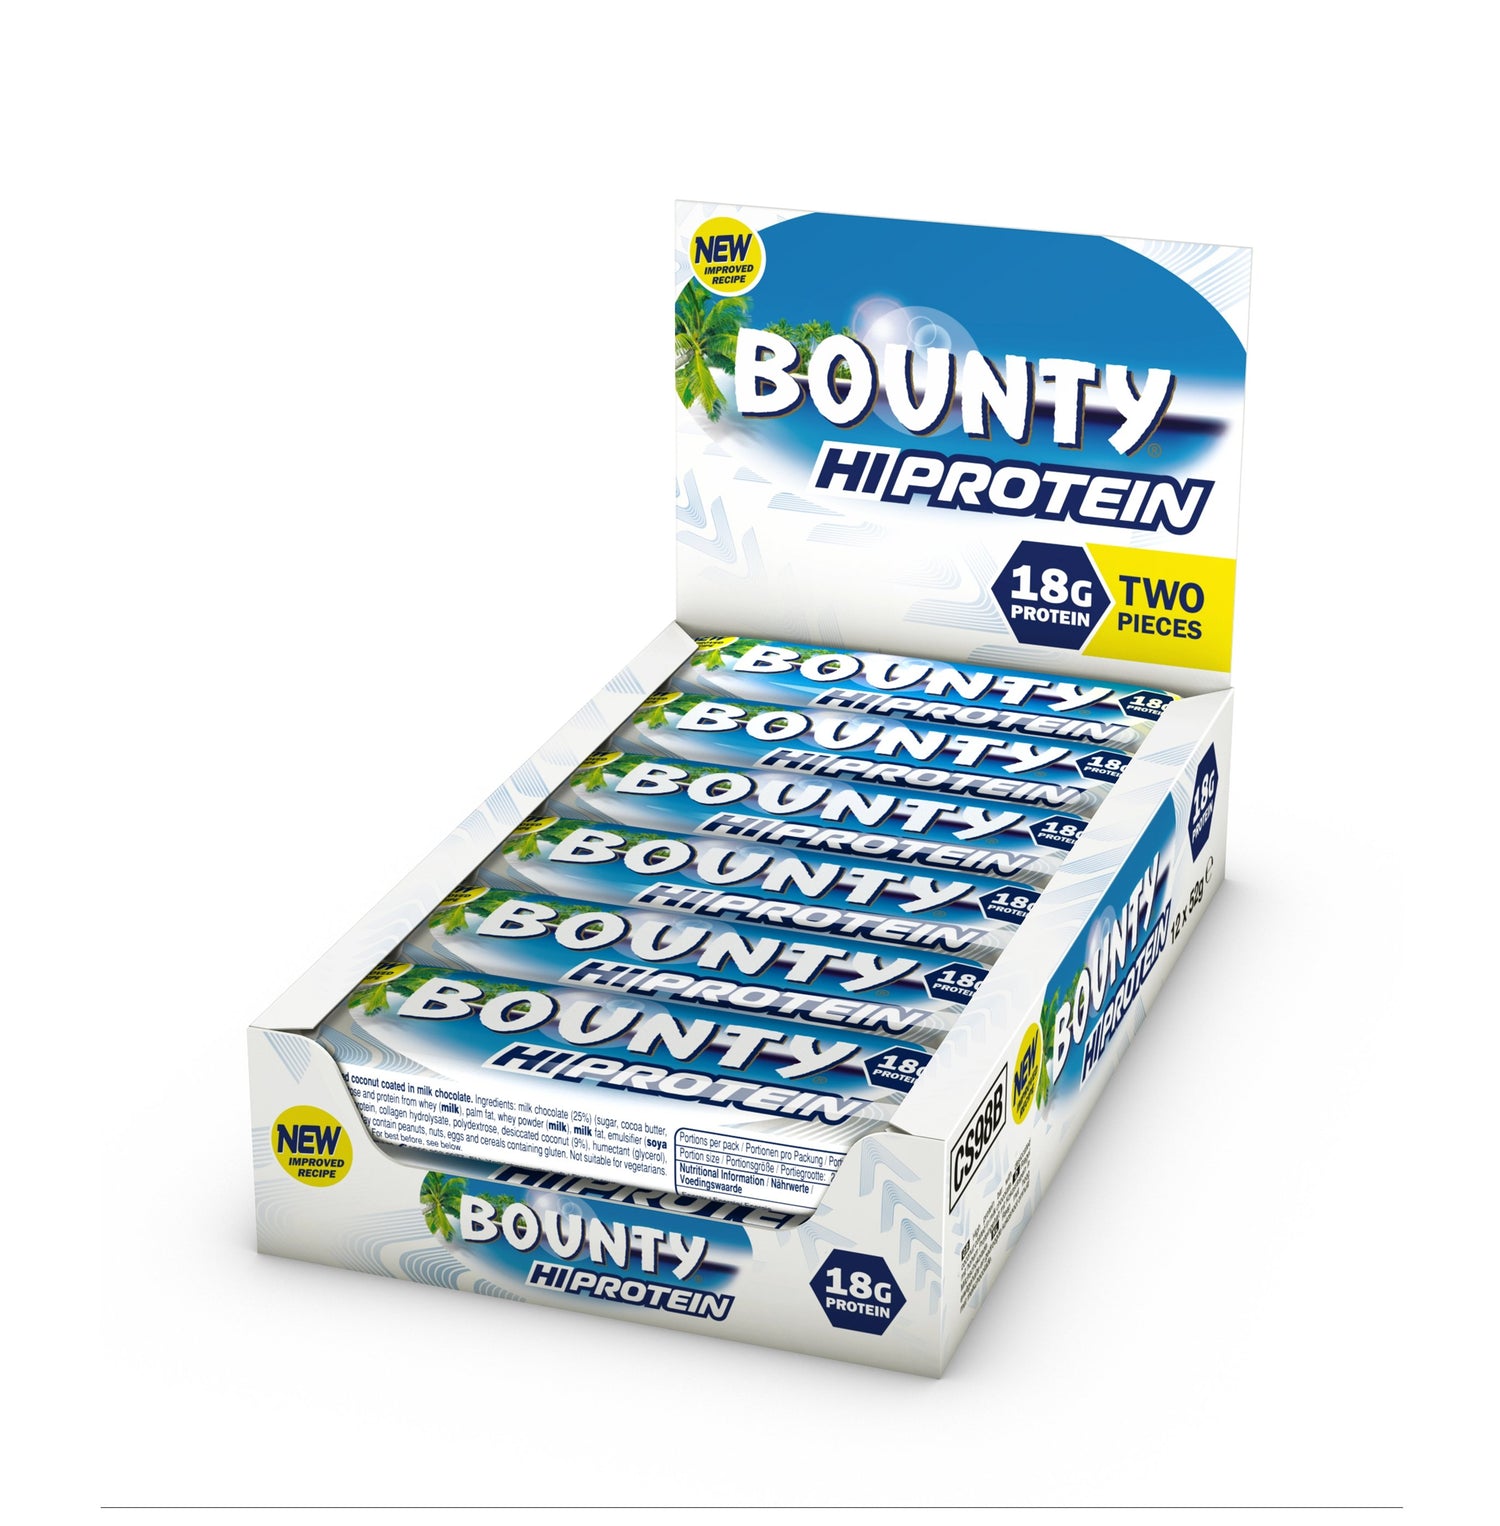 NOVE Bounty Hi proteinske ploščice (12 x 52g) - theskinnyfoodco